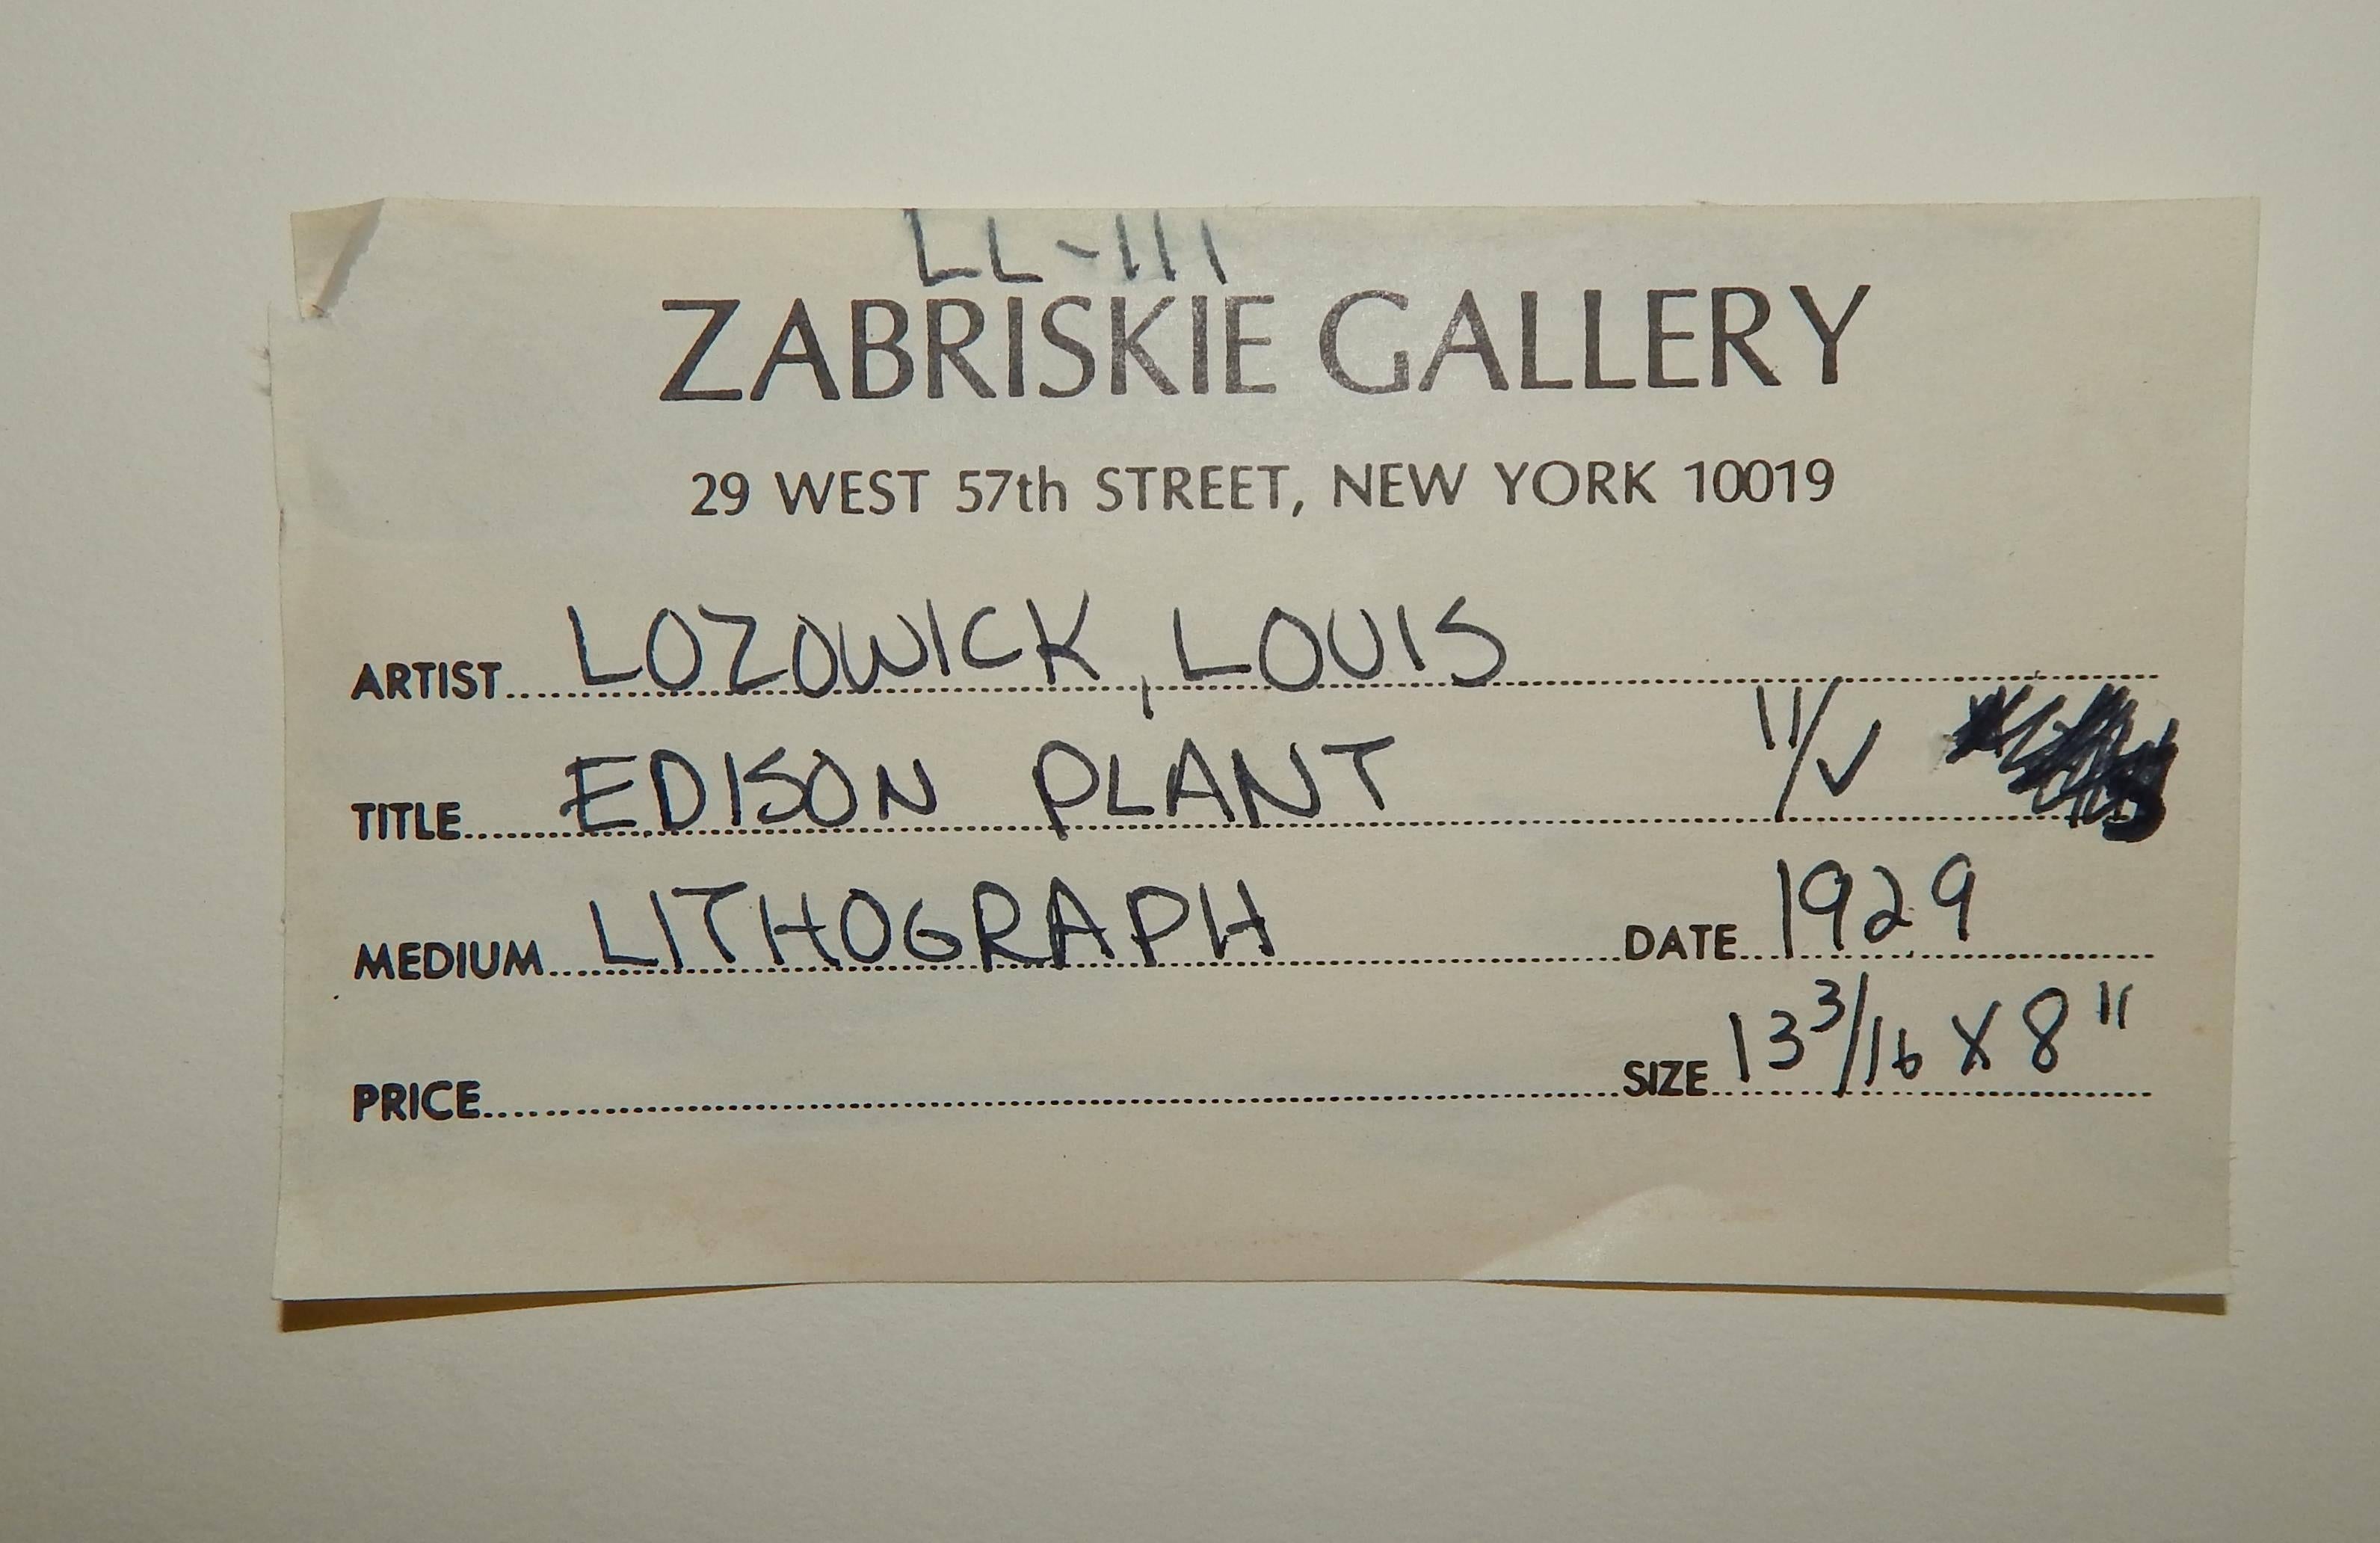 Hervorragend erhaltene Original-Lithografie von Louis Lozowick (1892-1973).
Bleistift signiert unten rechts. Auflagenhöhe unten links.
Nr. 24 in der Raisonne von Janet Flint. Auflage von 20 Stück.
Dieser Druck stammt aus einer zusätzlichen